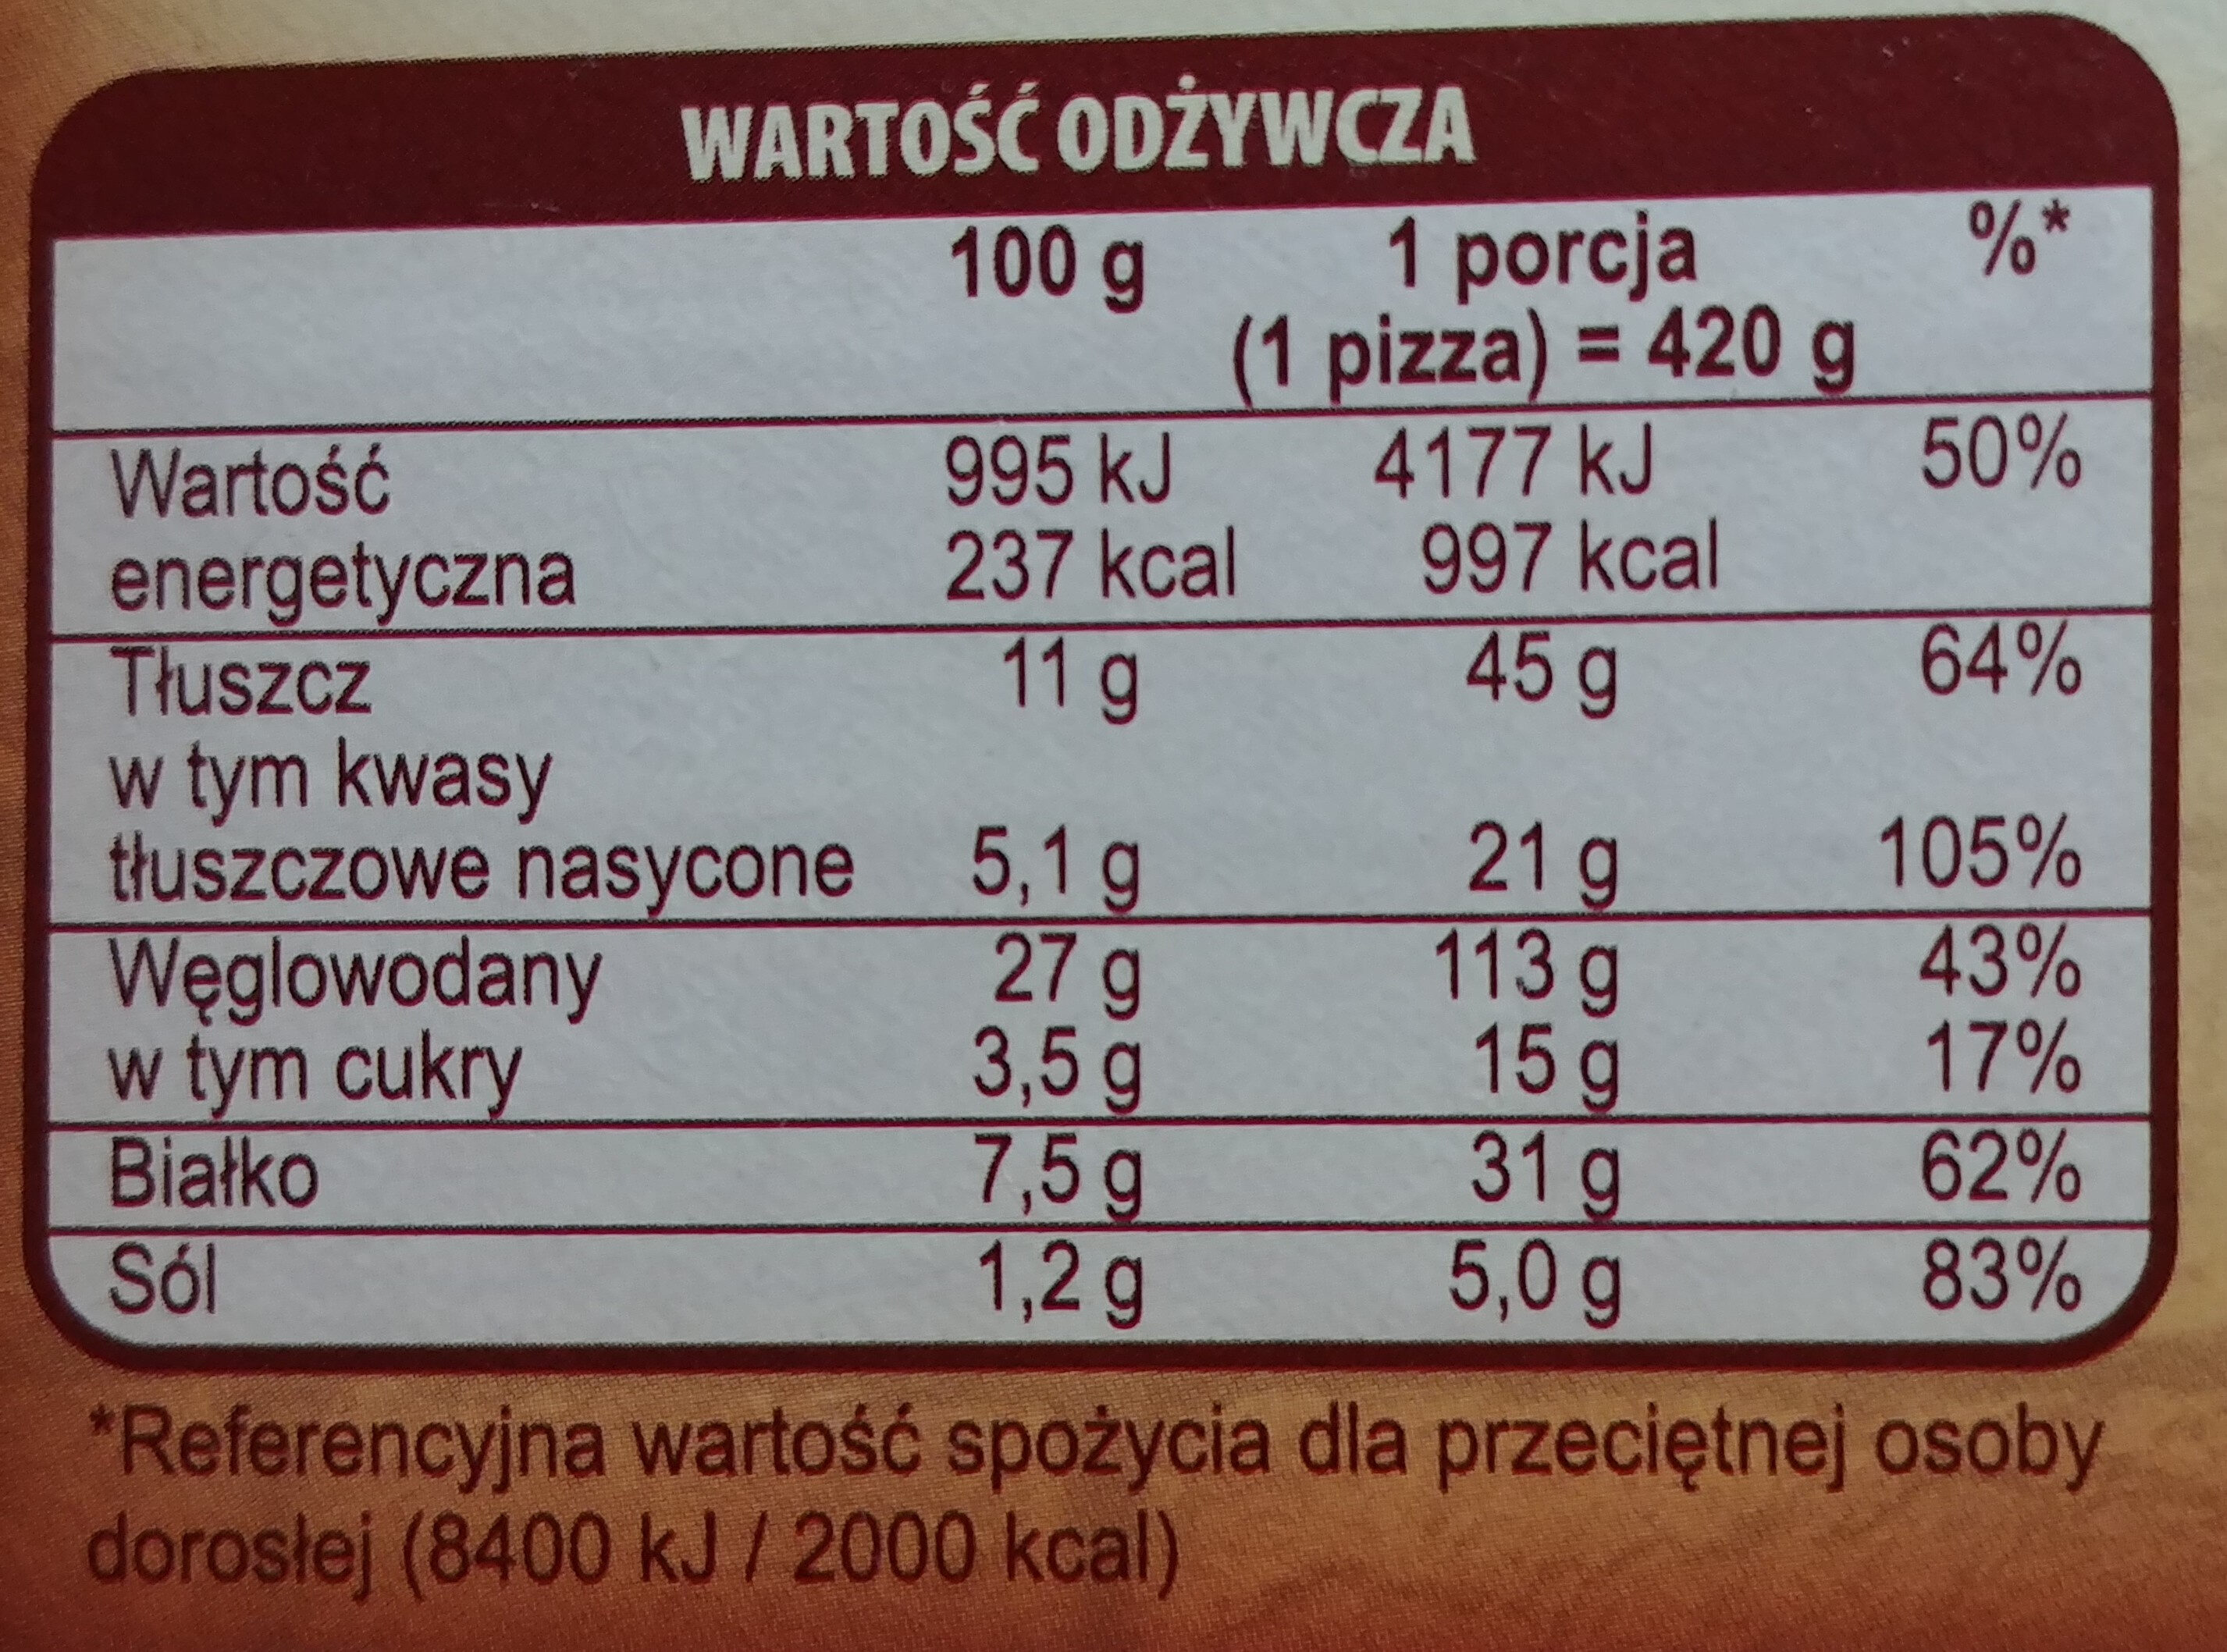 Pizza Guseppe z mięsem wołowym i warzywami, głęboko mrożona - Nutrition facts - pl